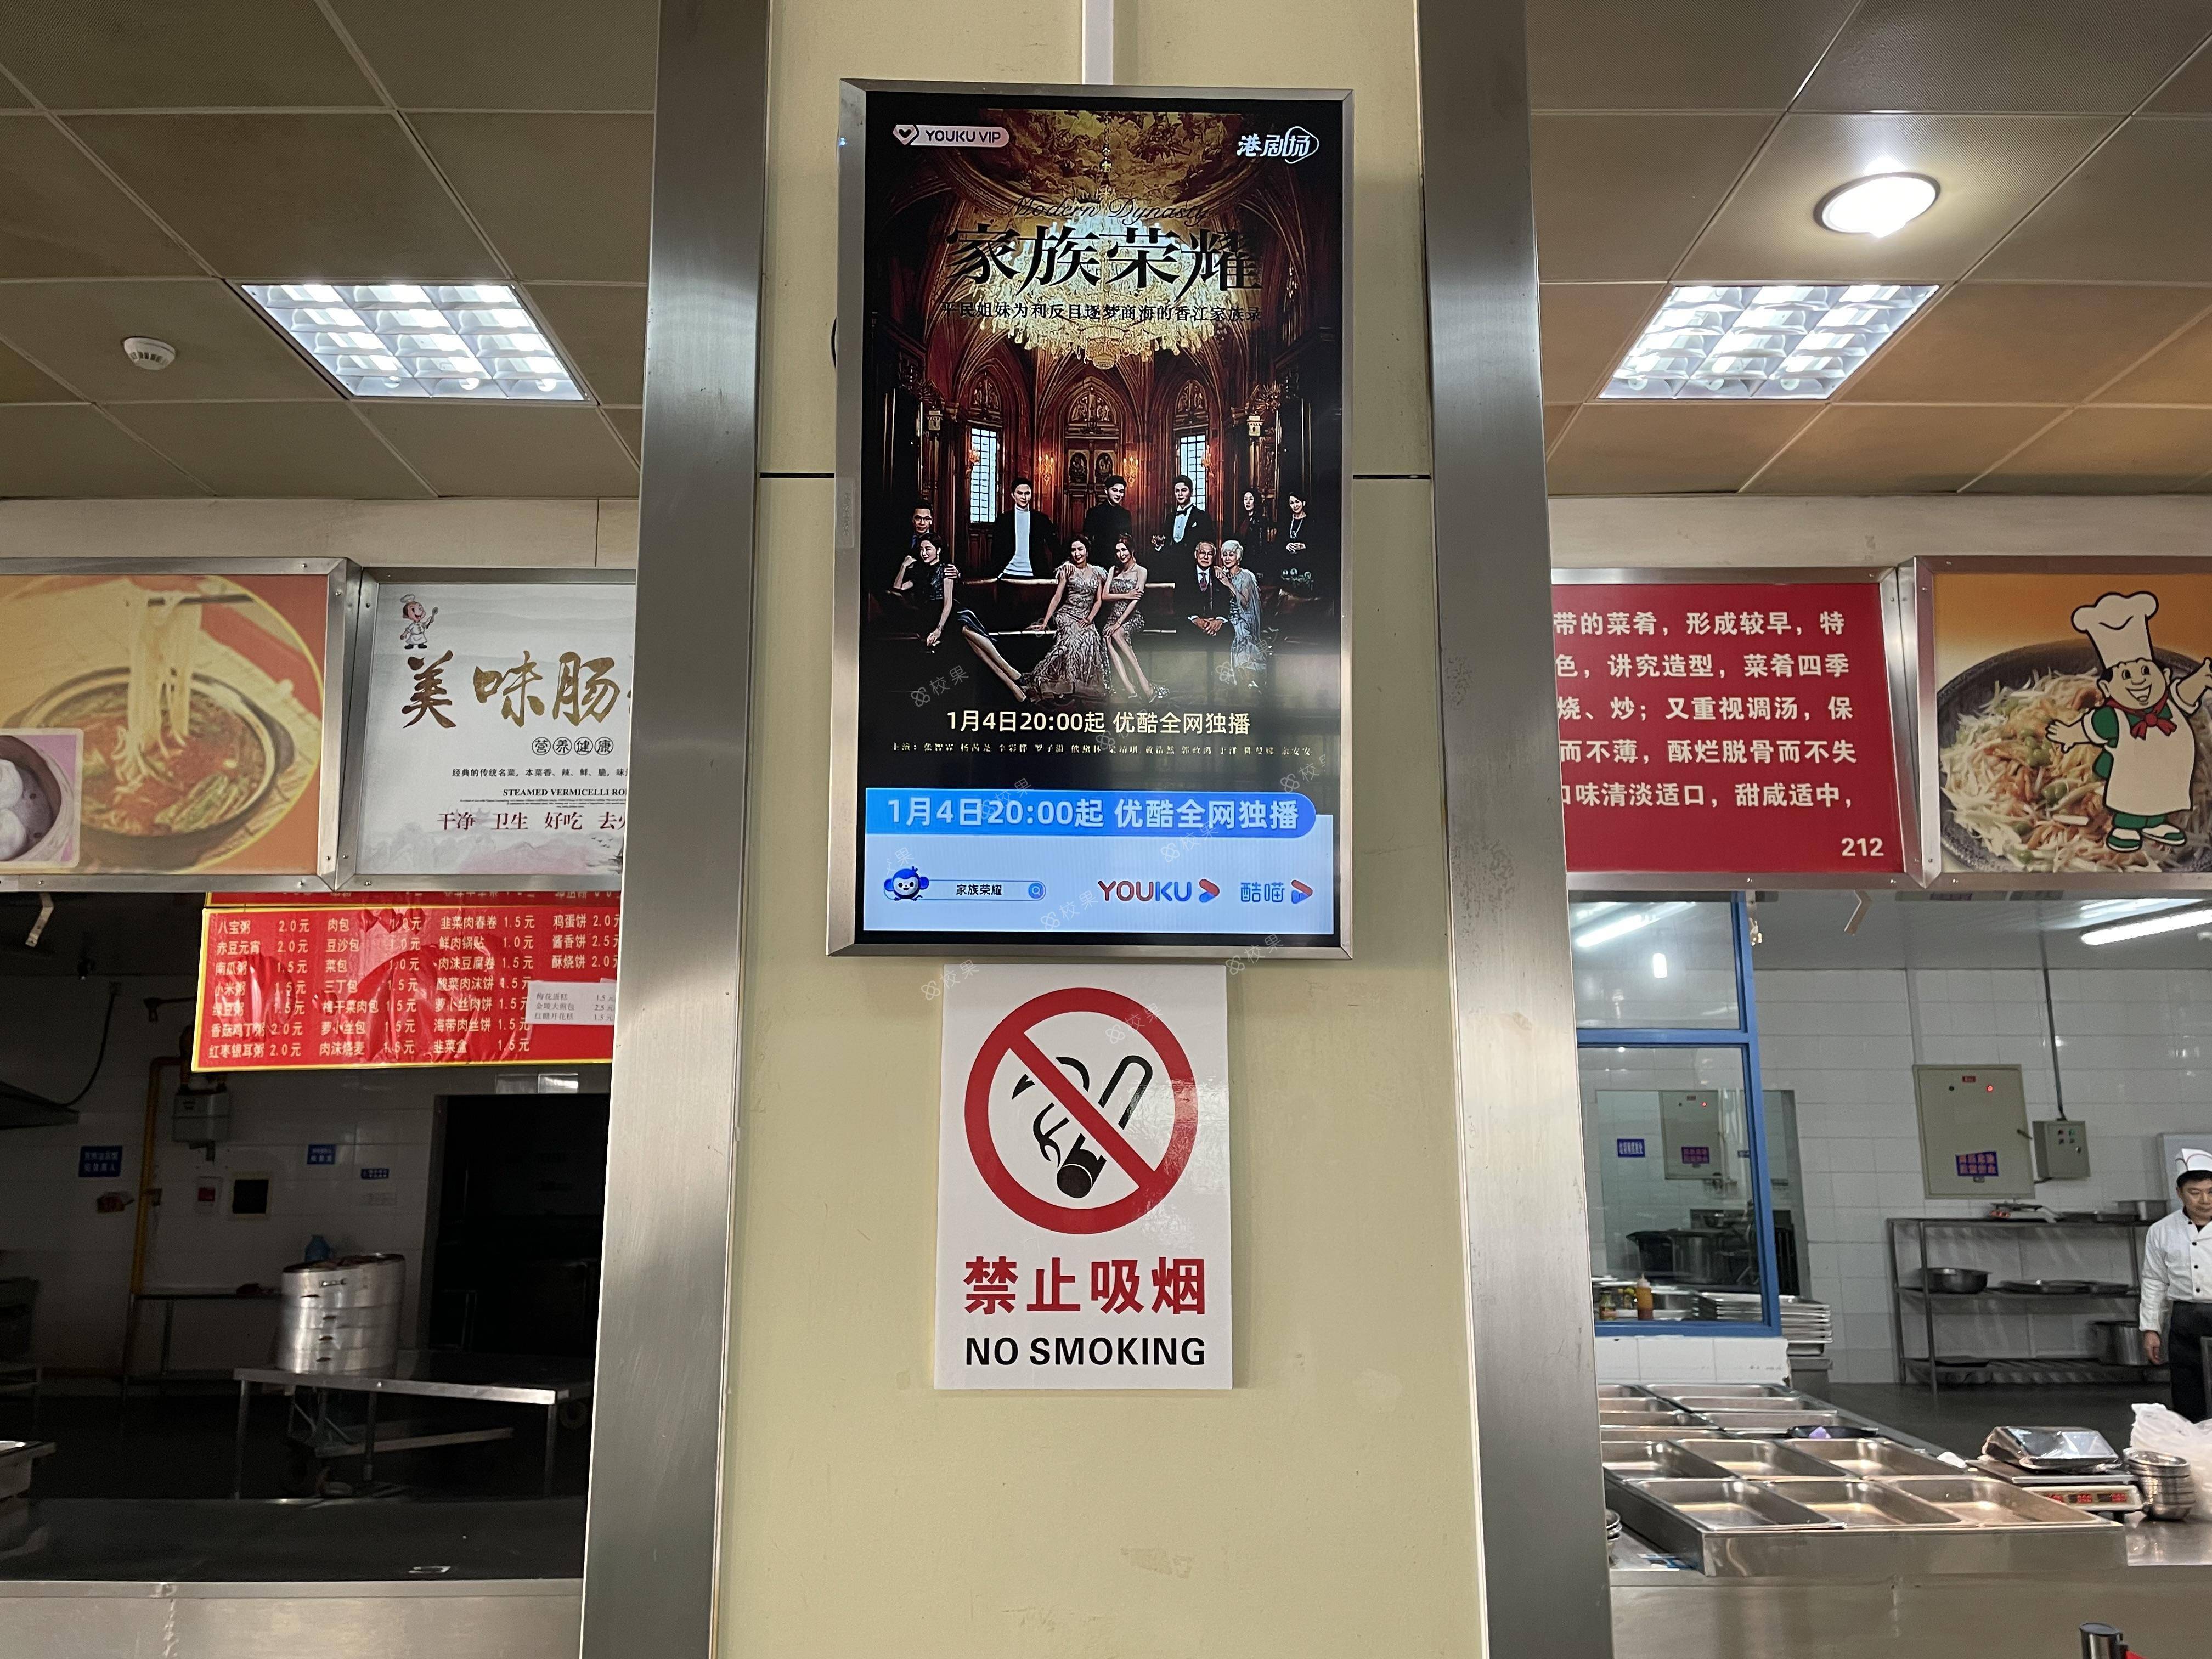 液晶屏广告 西藏民族大学